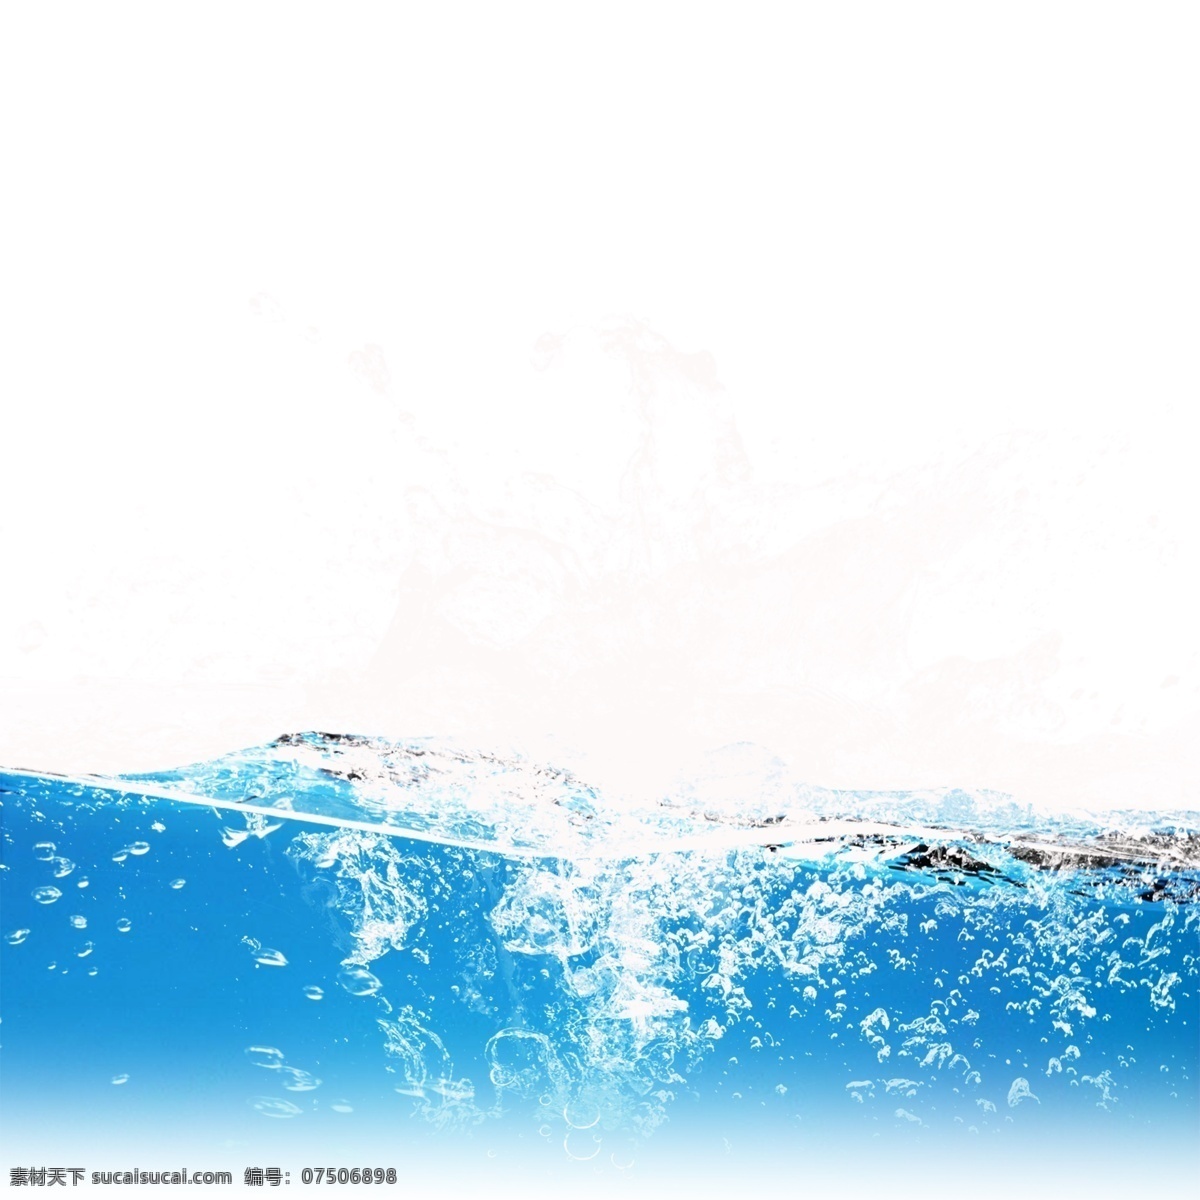 喷溅 水花 水滴 元素 蓝色水花 水波纹 波浪 动感 动感水 动感水浪 动感水纹 水效果 水波 水 飞